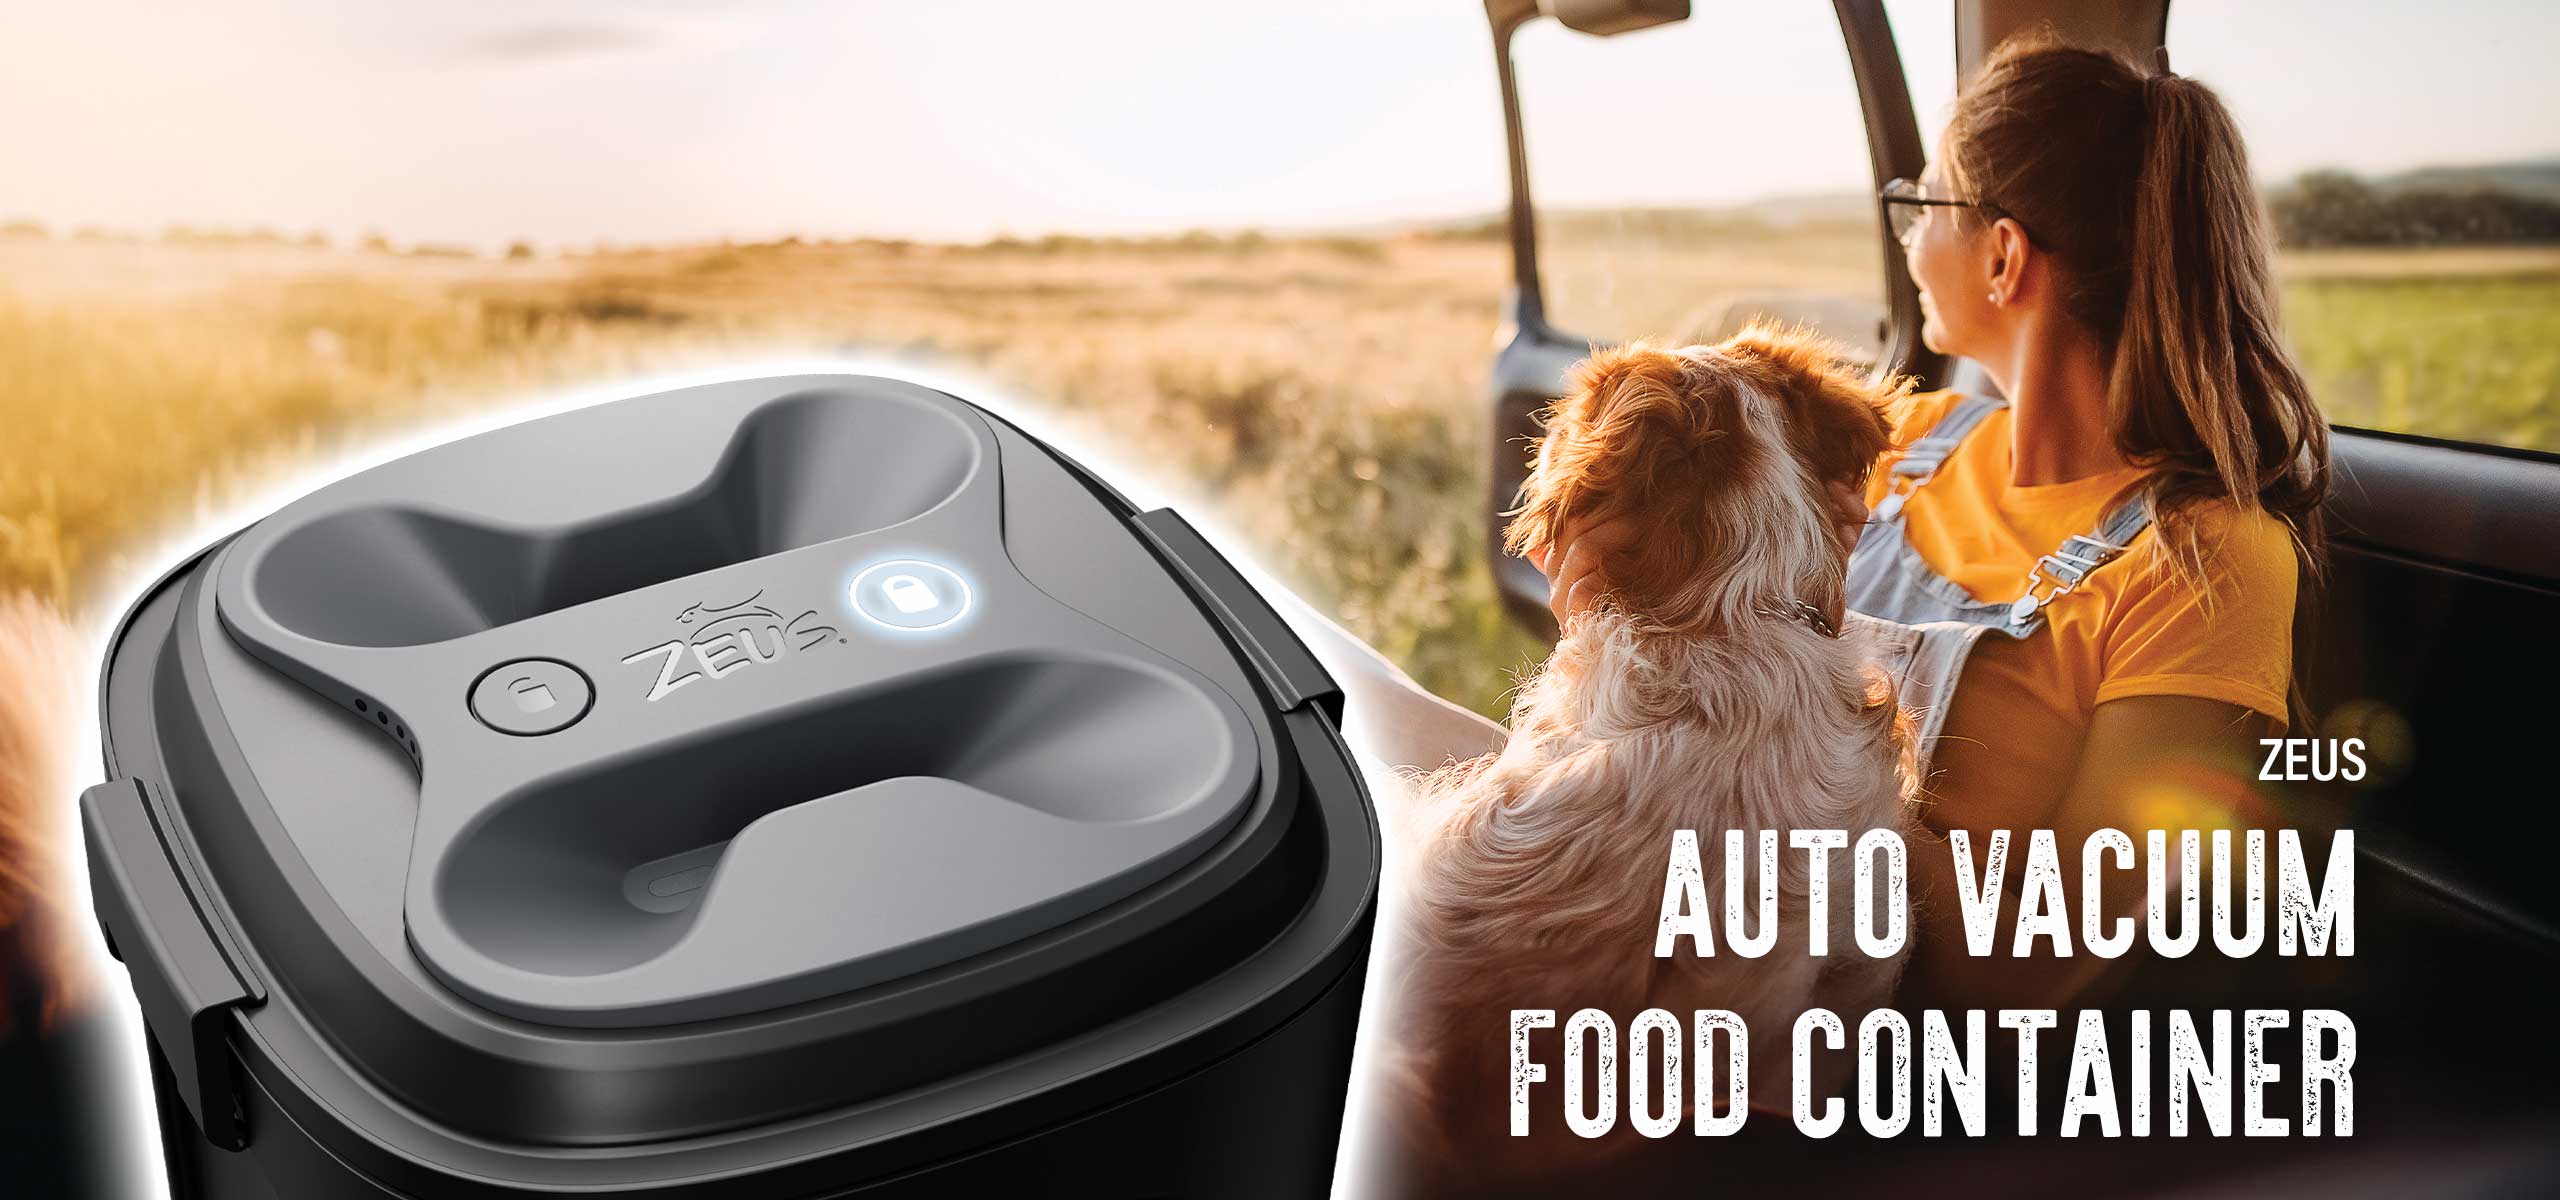 Zeus Auto Vacuum Food Container